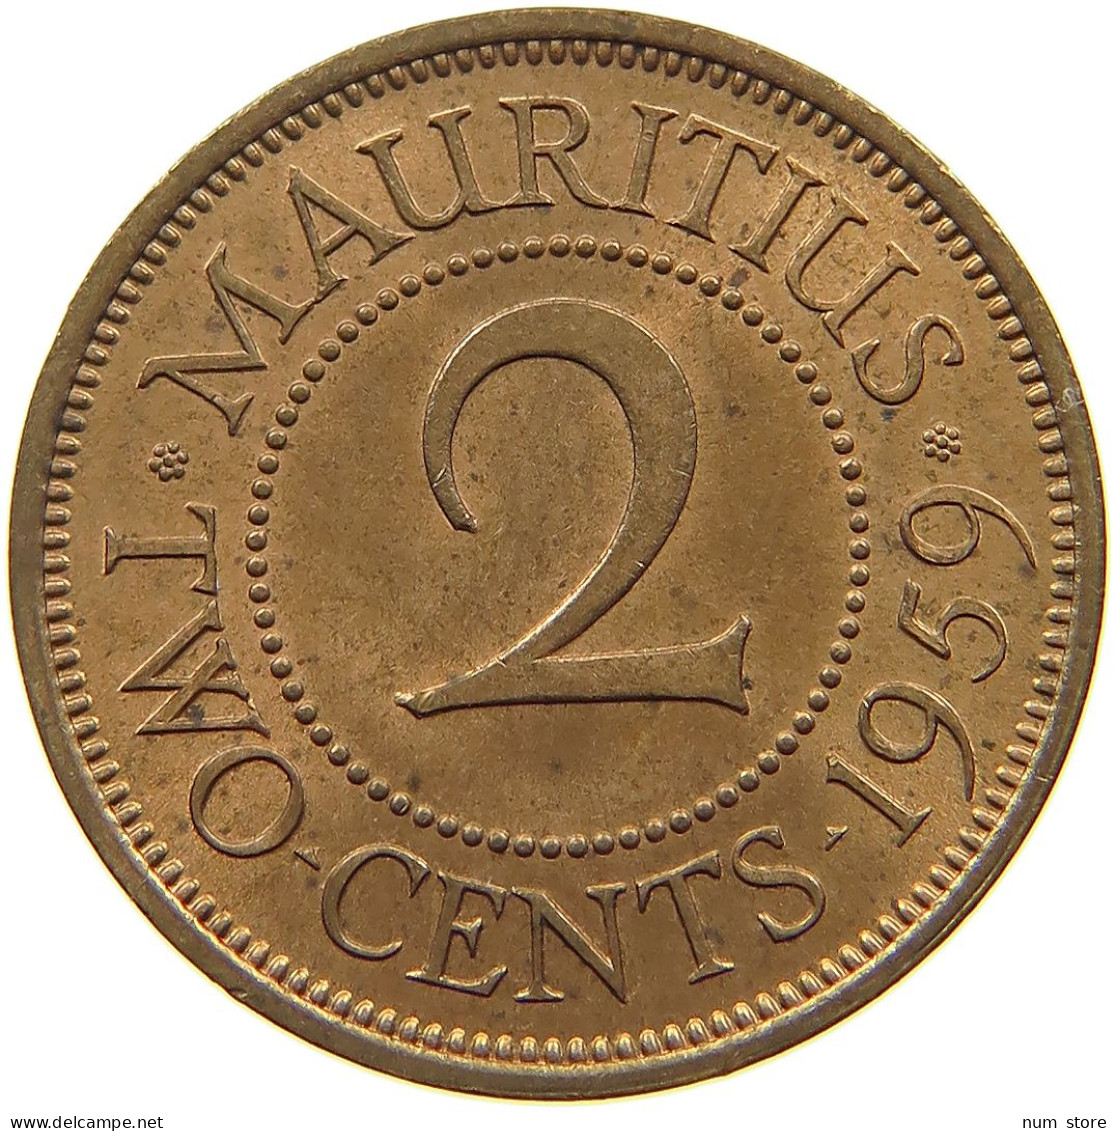 MAURITIUS 2 CENTS 1959 Elizabeth II. (1952-2022) #a095 0471 - Mauritius